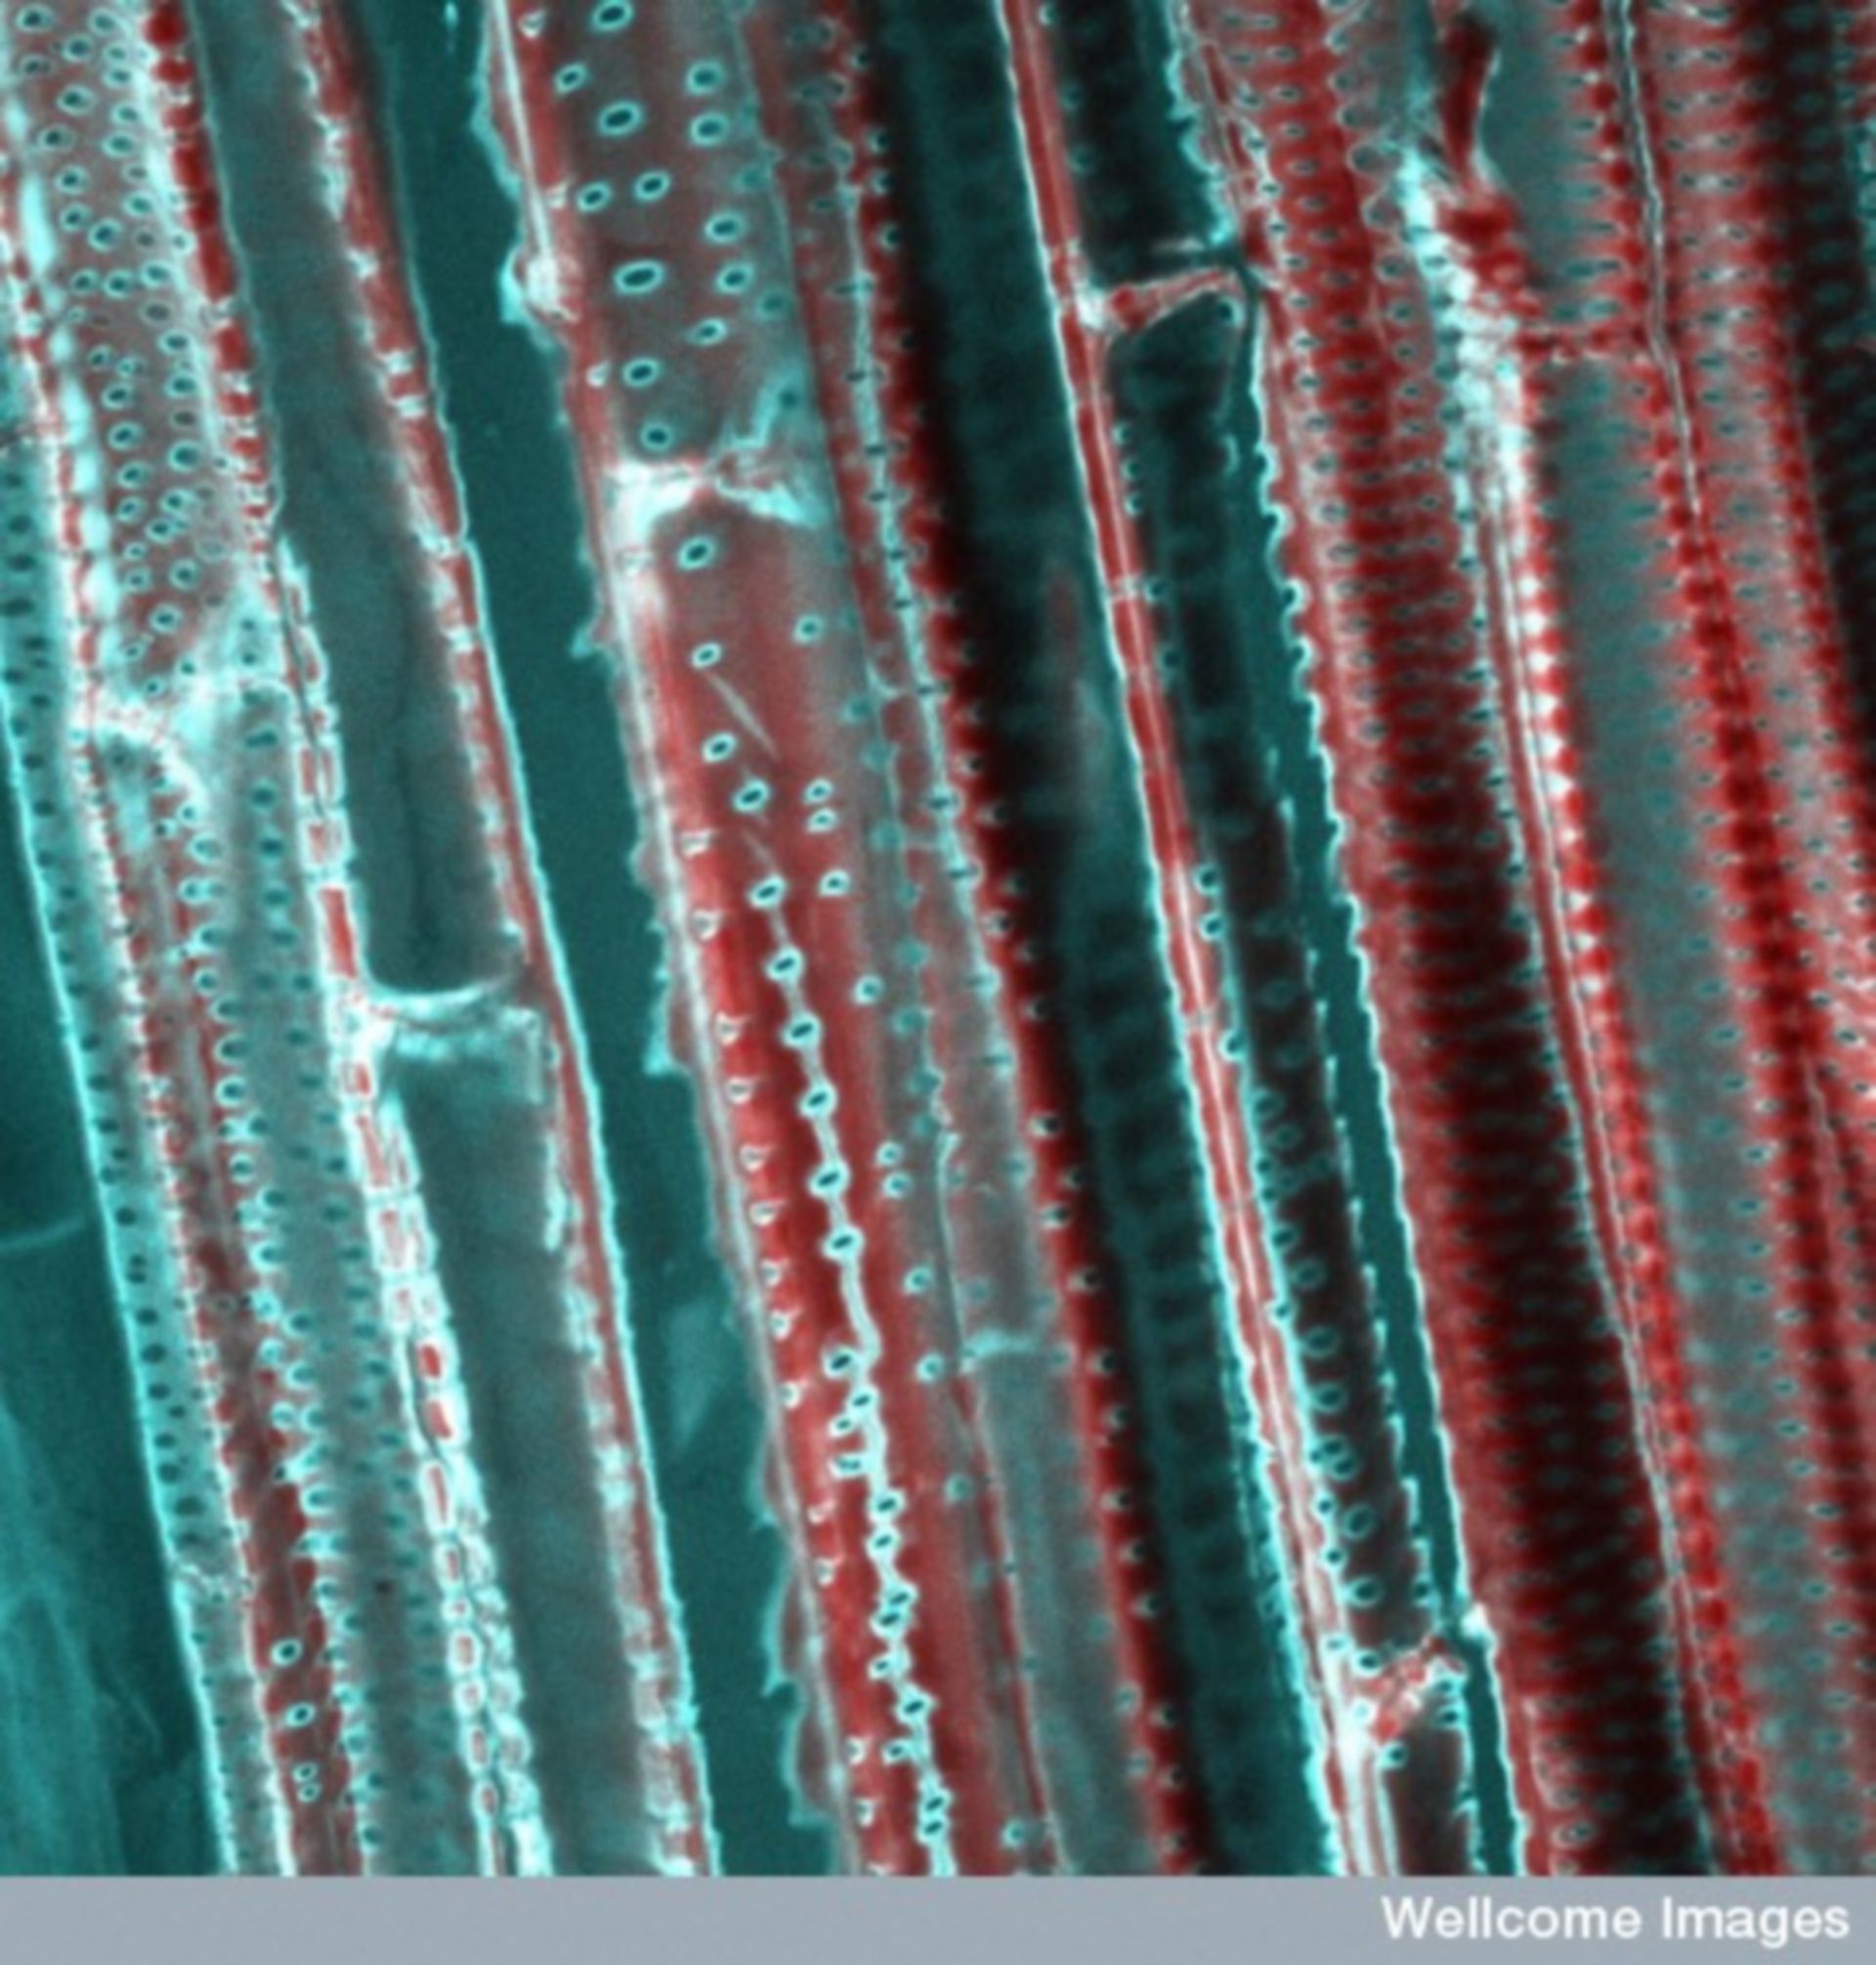 Mikroskopische Aufnahme des Xylems